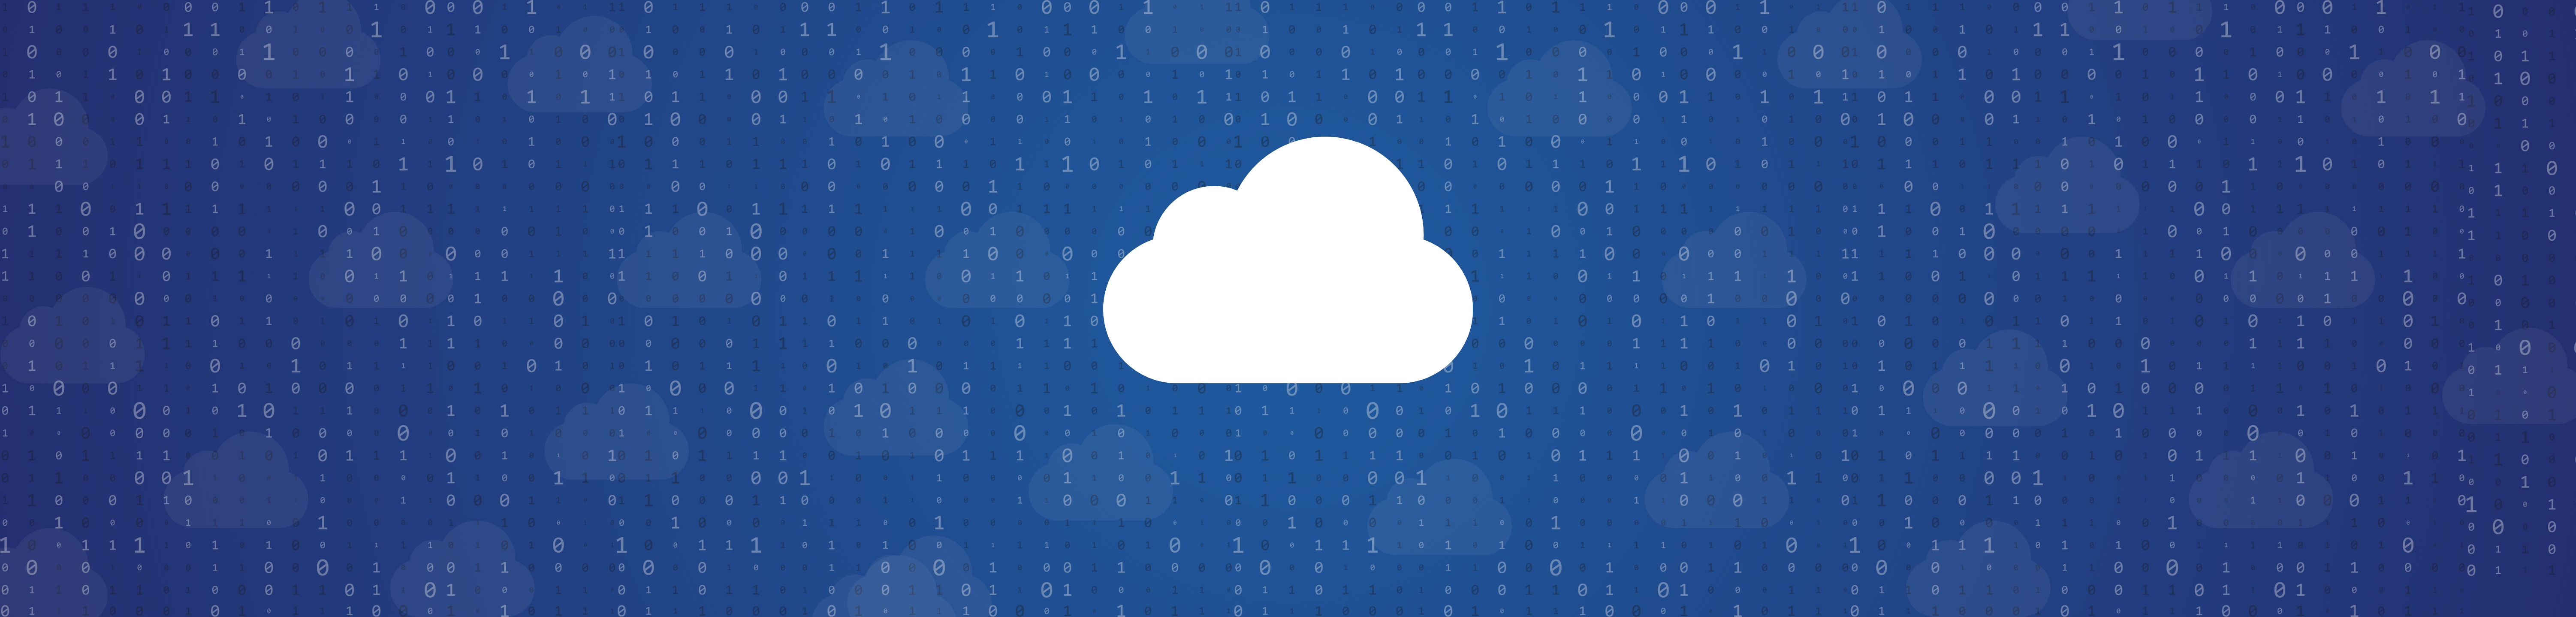 Les essentiels du cloud computing Microsoft image selectionnee